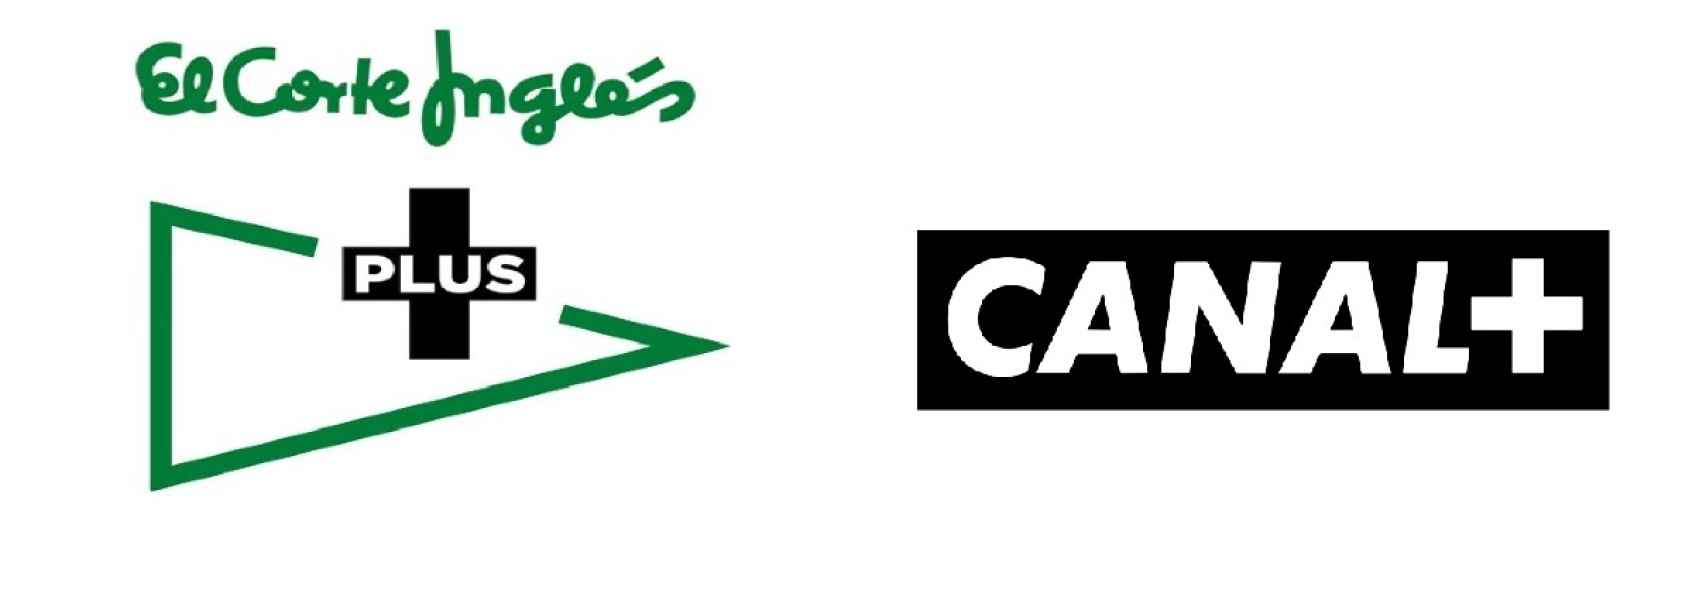 Logos de El Corte Inglés Plus y Canal+.